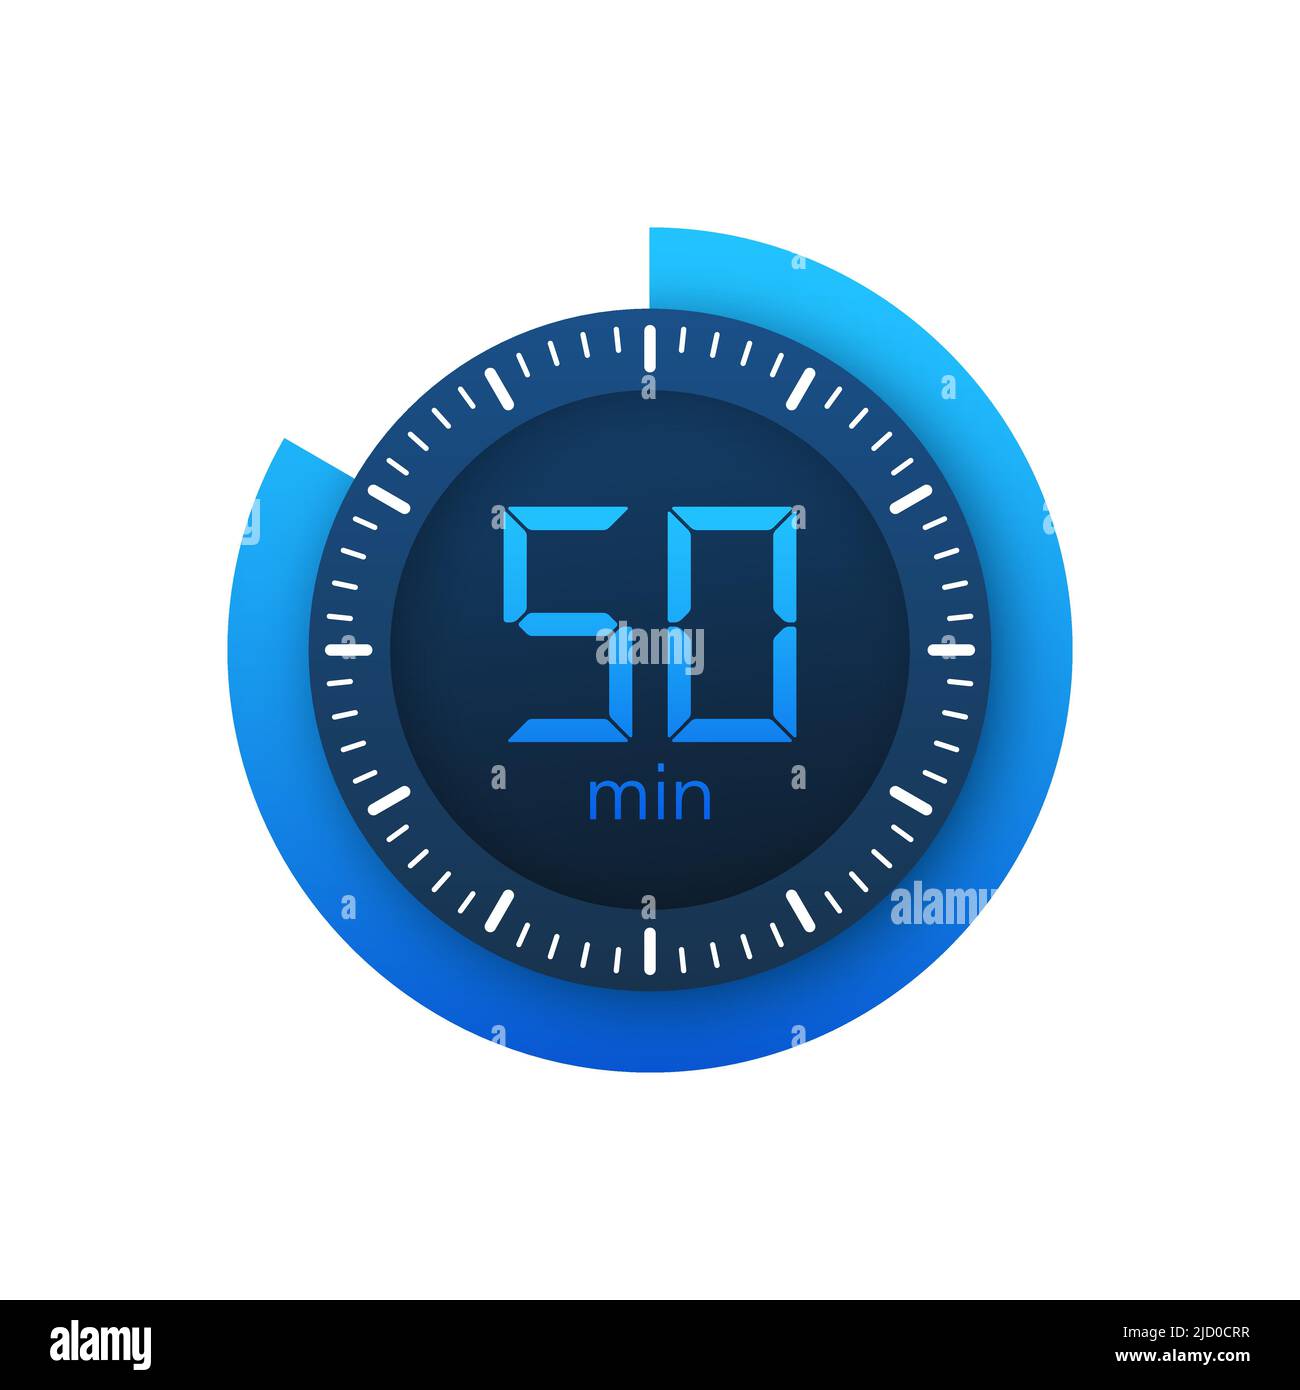 L'icône de vecteur chronomètre de 50 minutes. Icône de chronomètre de style plat sur fond blanc. Illustration du stock vectoriel. Illustration de Vecteur